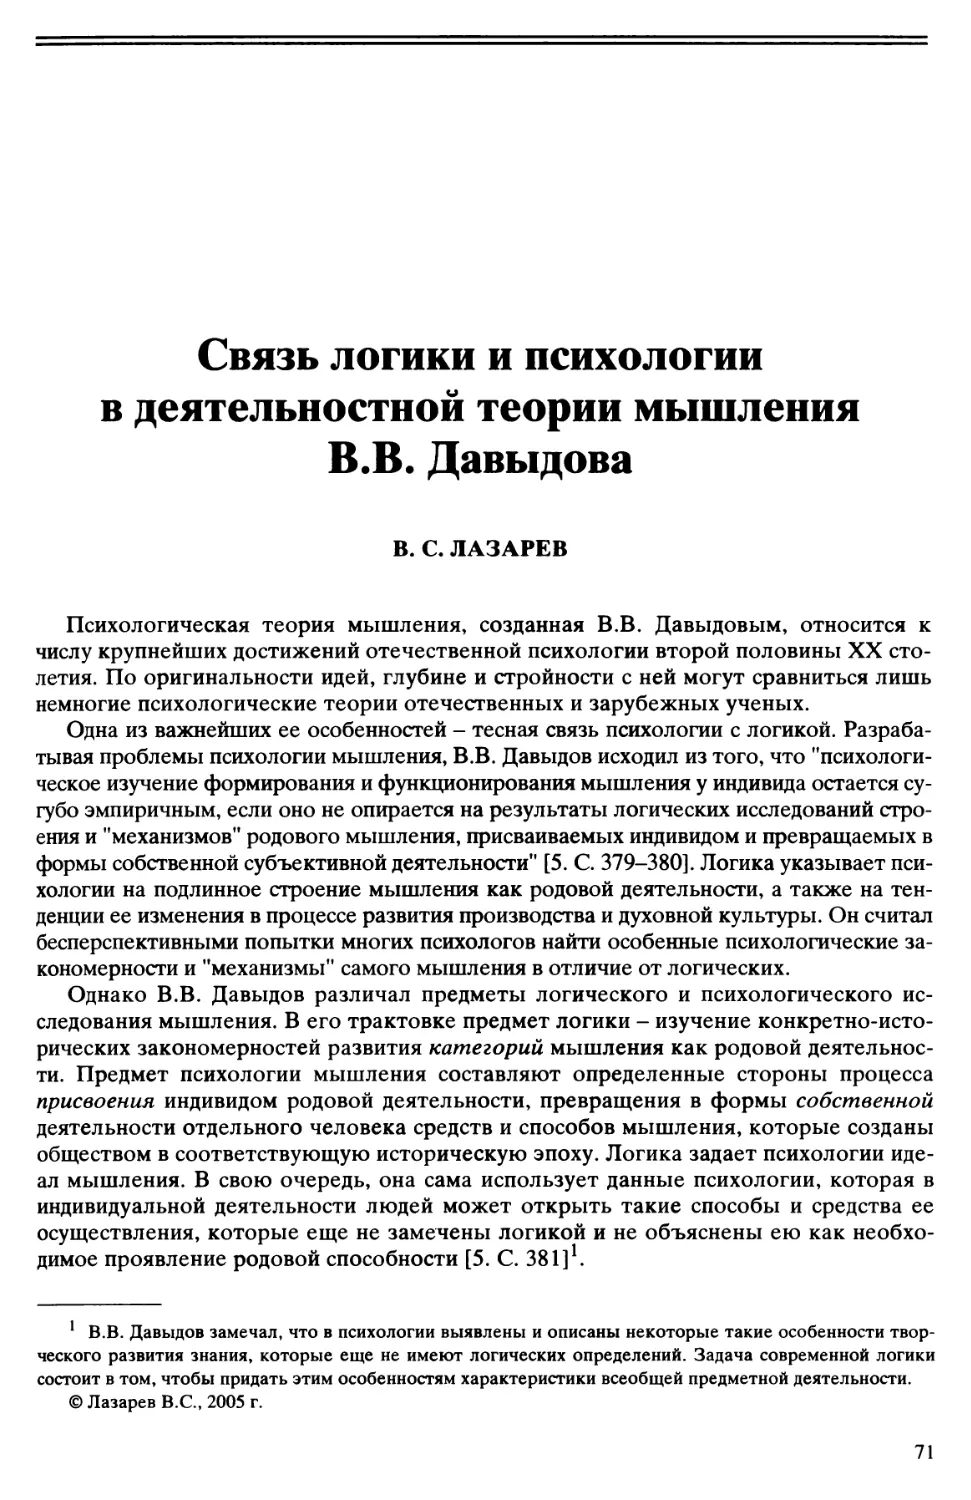 B.C. Лазарев - Связь логики и психологии в деятельностной теории мышления В.В. Давыдова